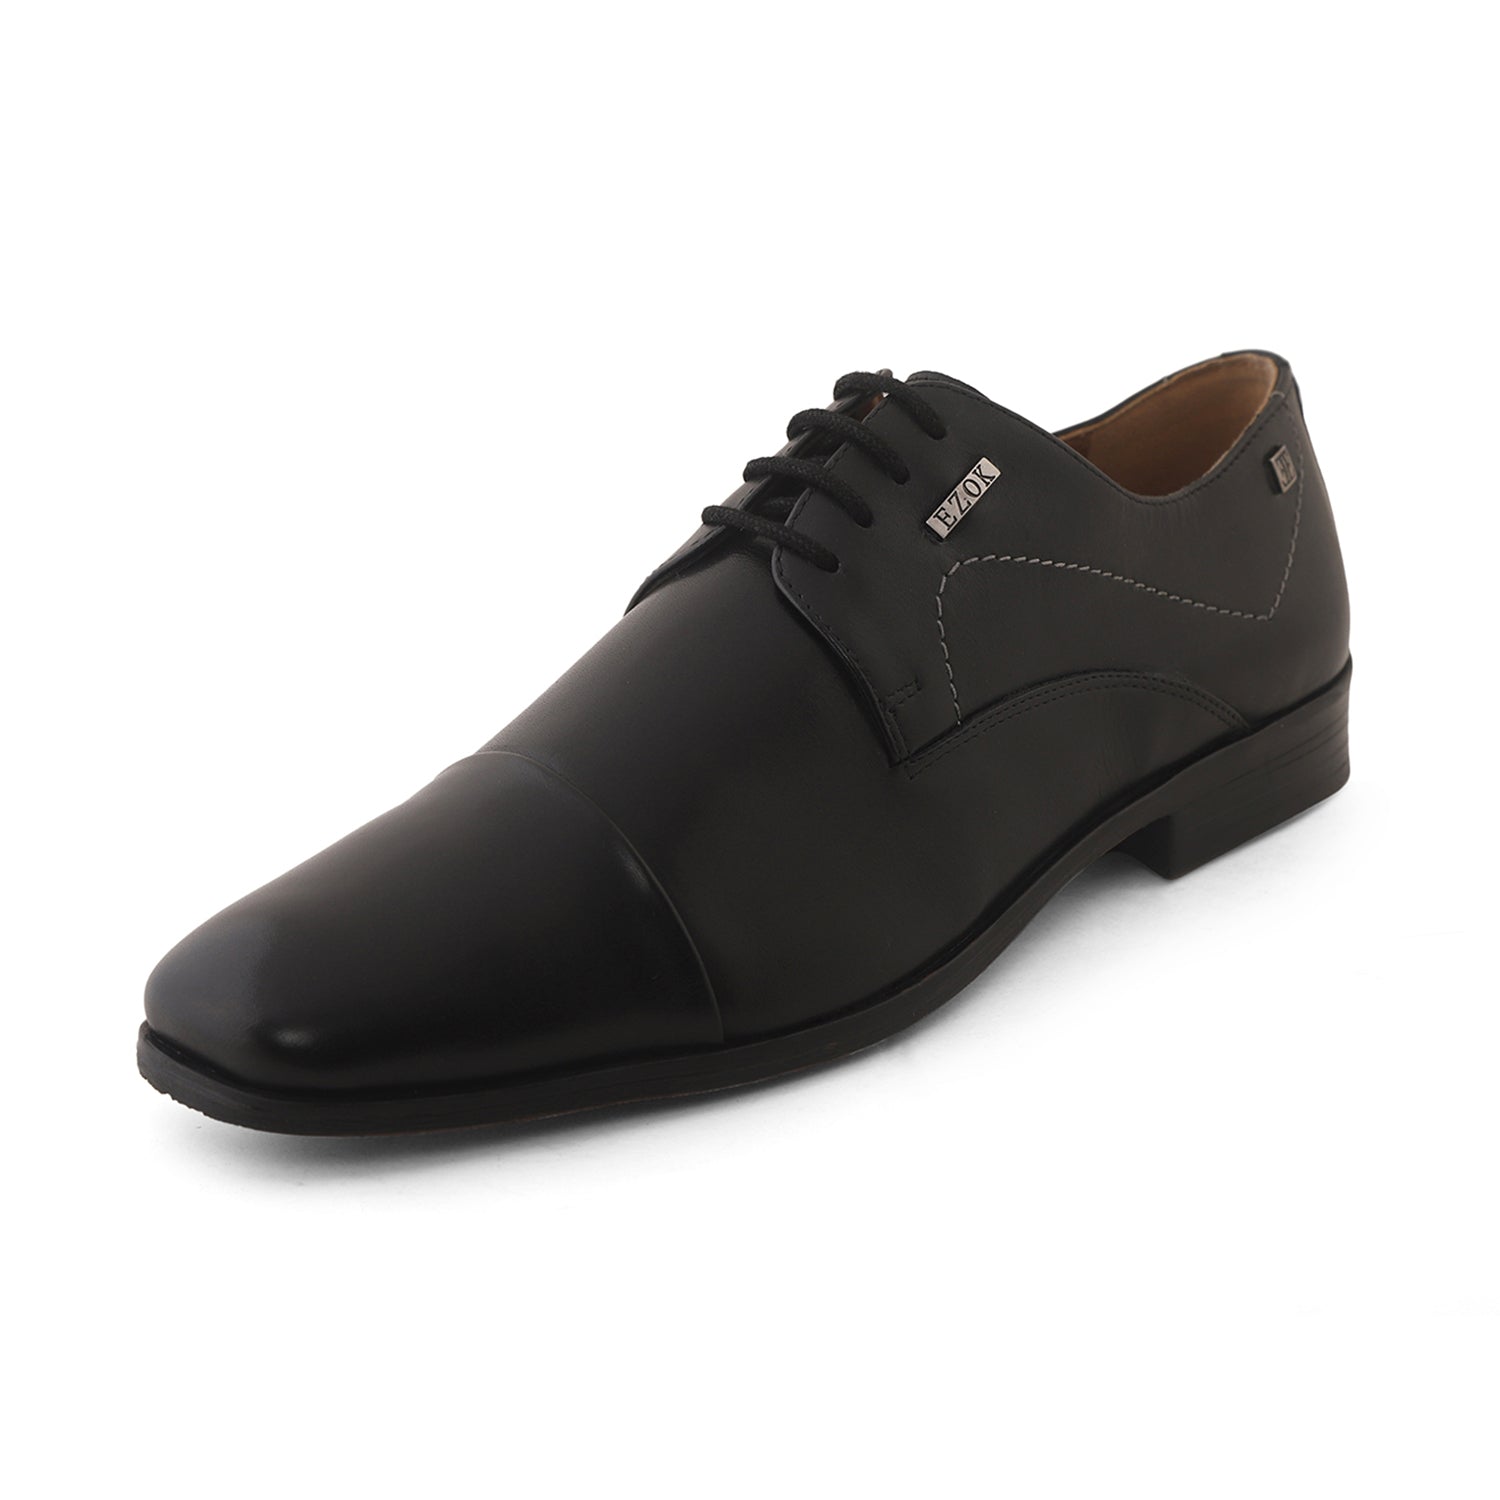 Nuez Semicírculo Dos grados Buy Black Formal Cap Toe Leather Derby Shoes – Ezok Shoes